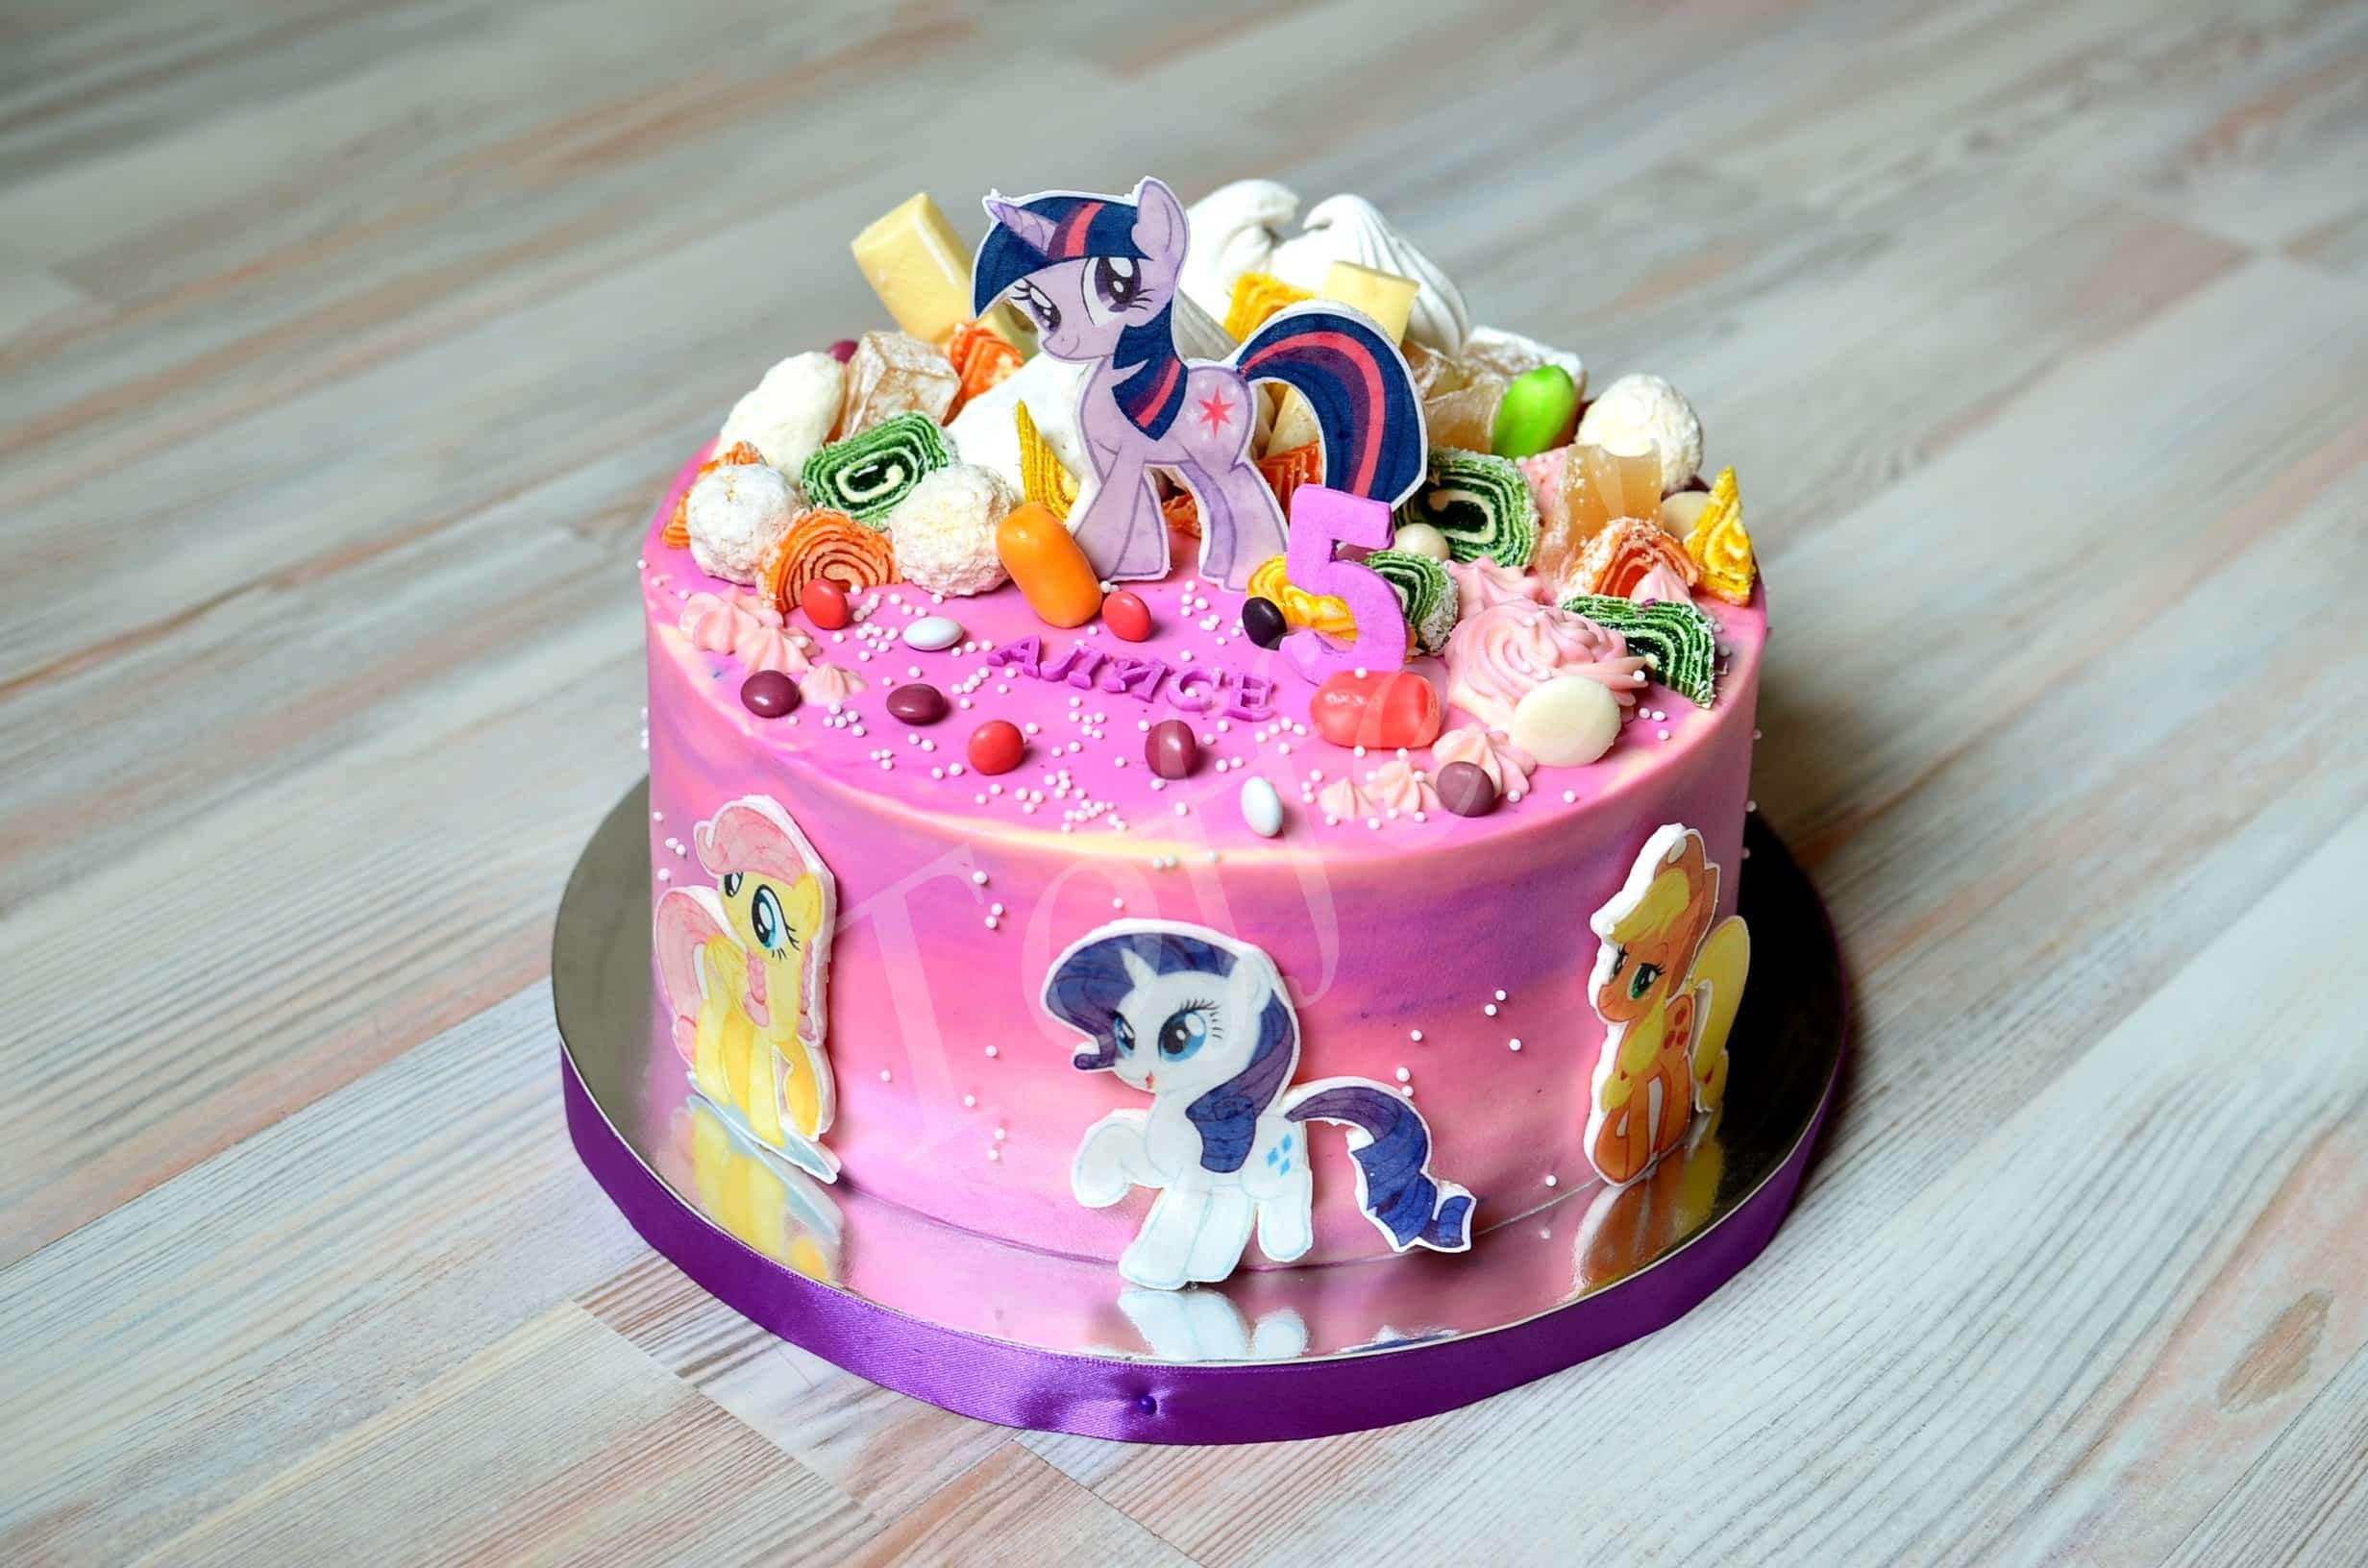 Детский торт Литл Пони на день рождения от 800 руб/кг с доставкой